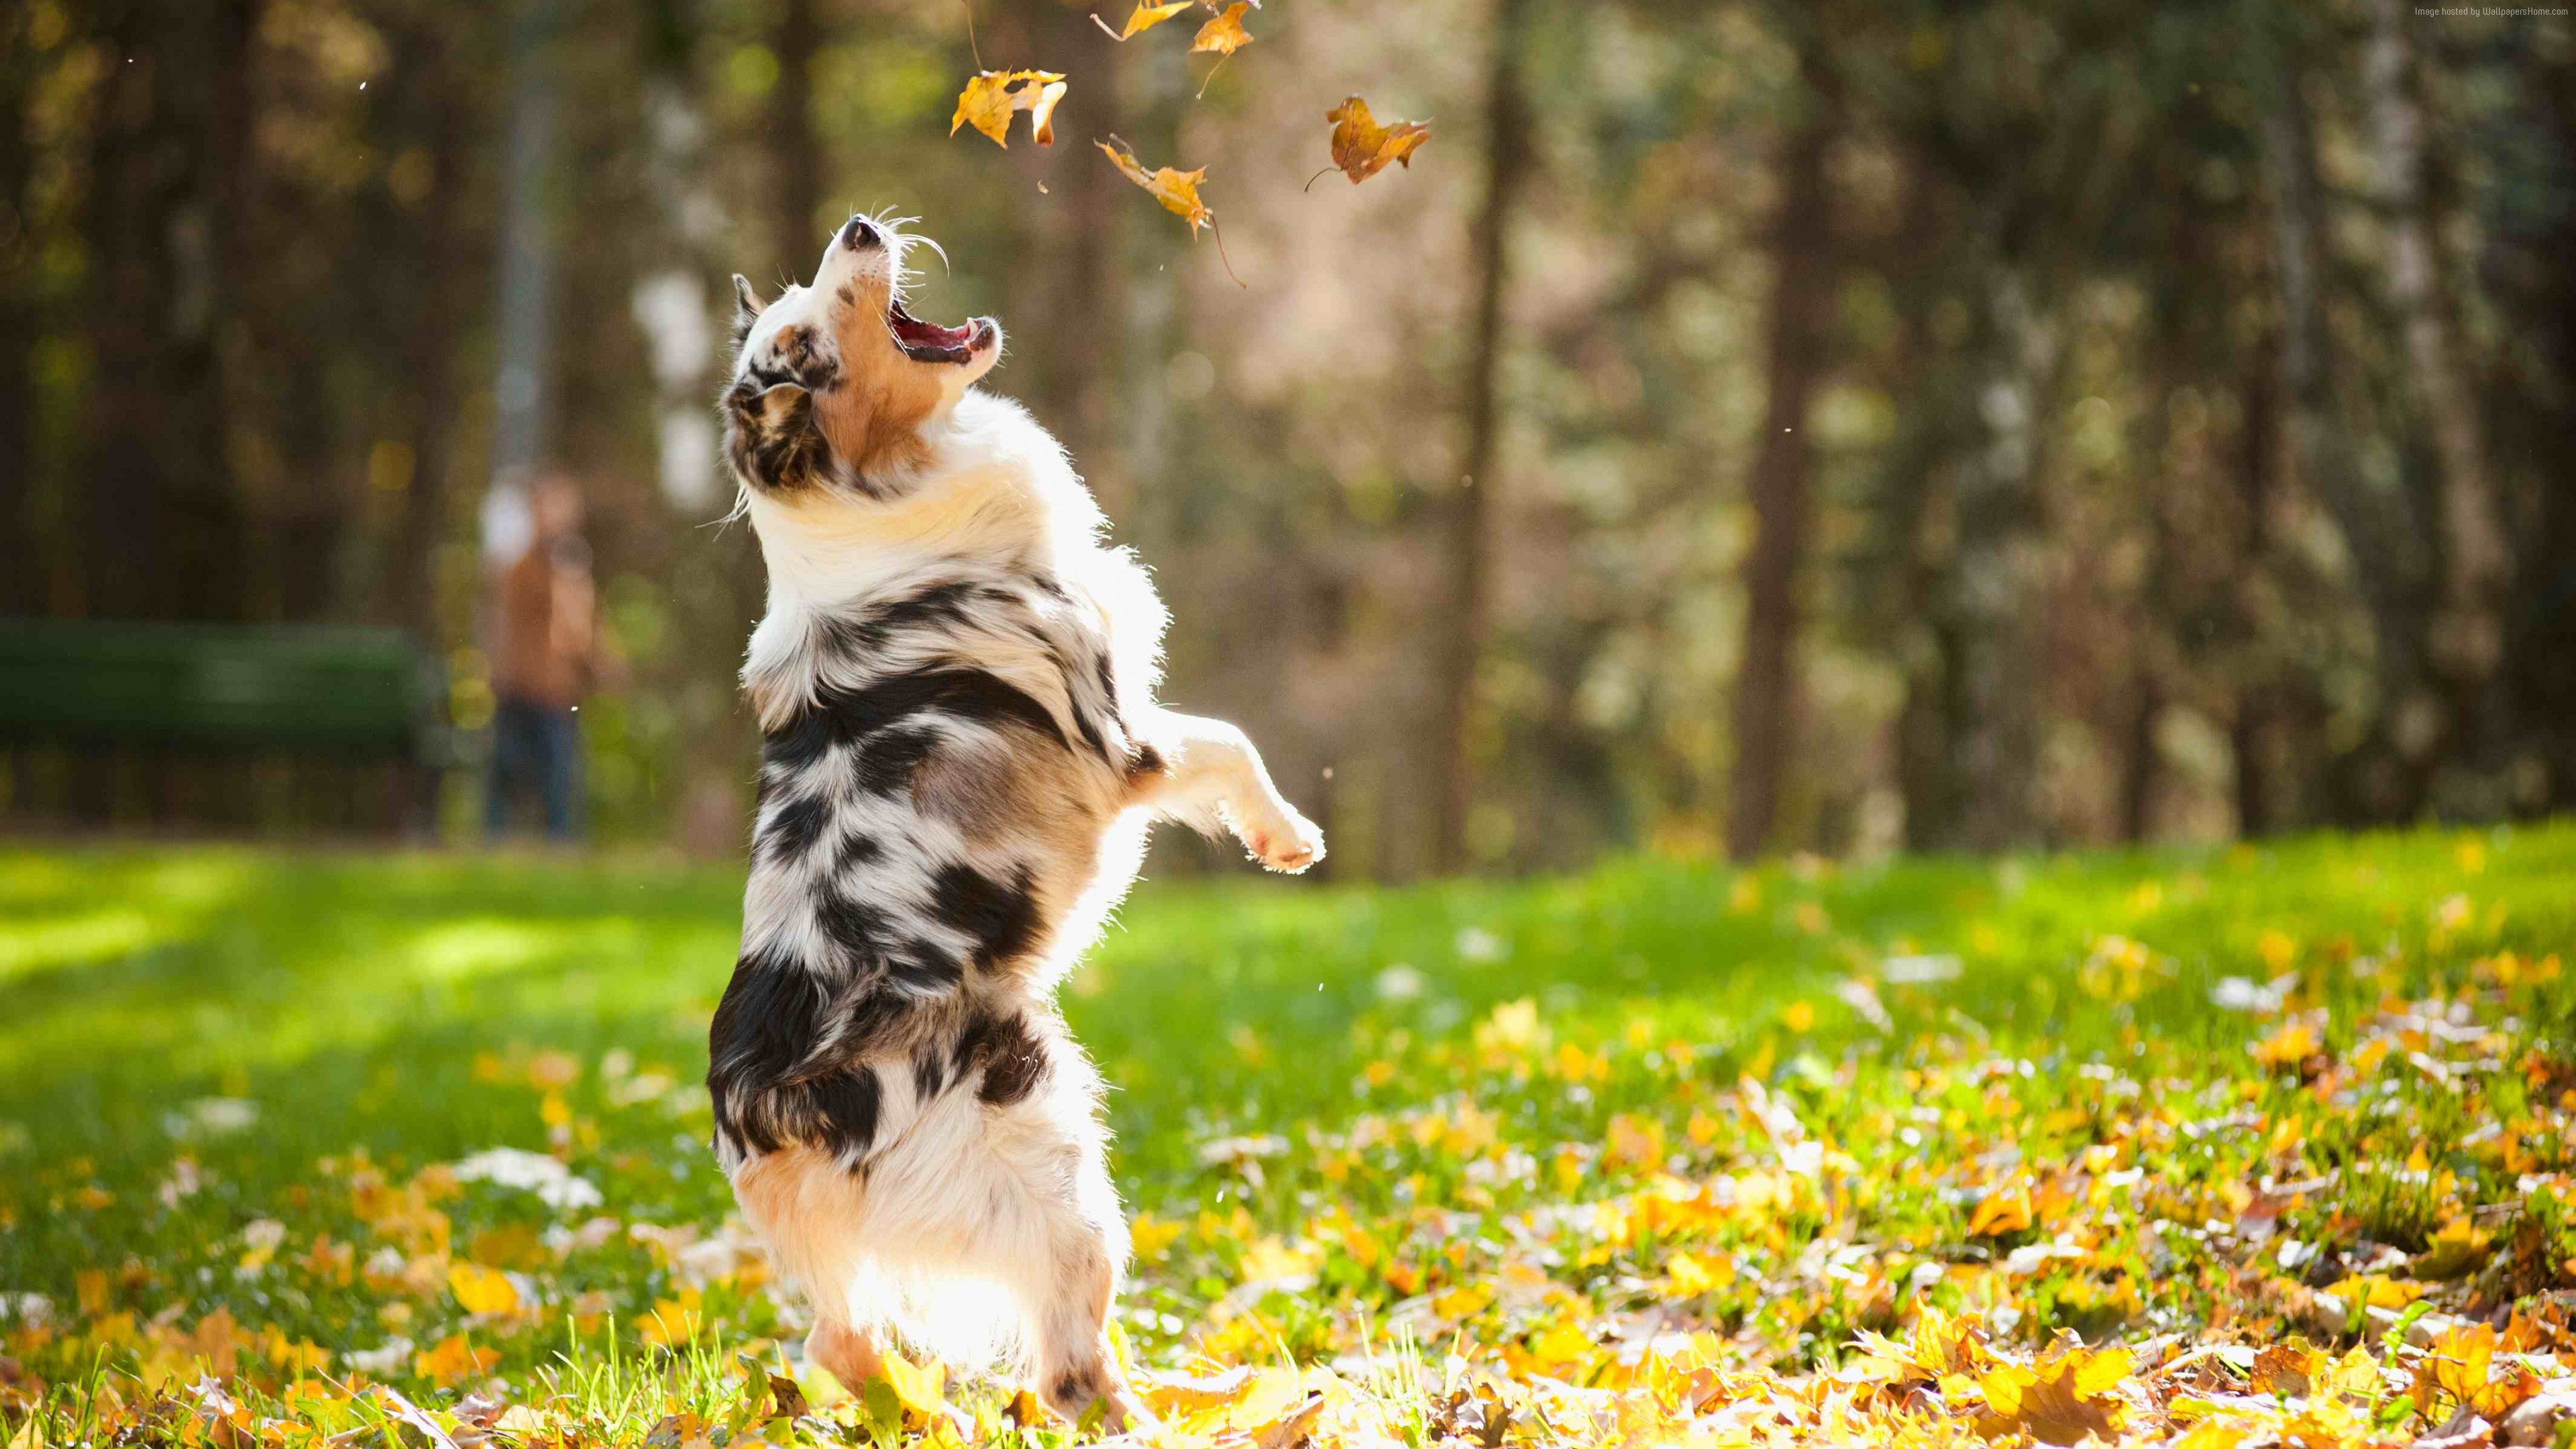 Wallpaper Dog, puppy, jumping, leaves, autumn, pet, green grass, park, Animals